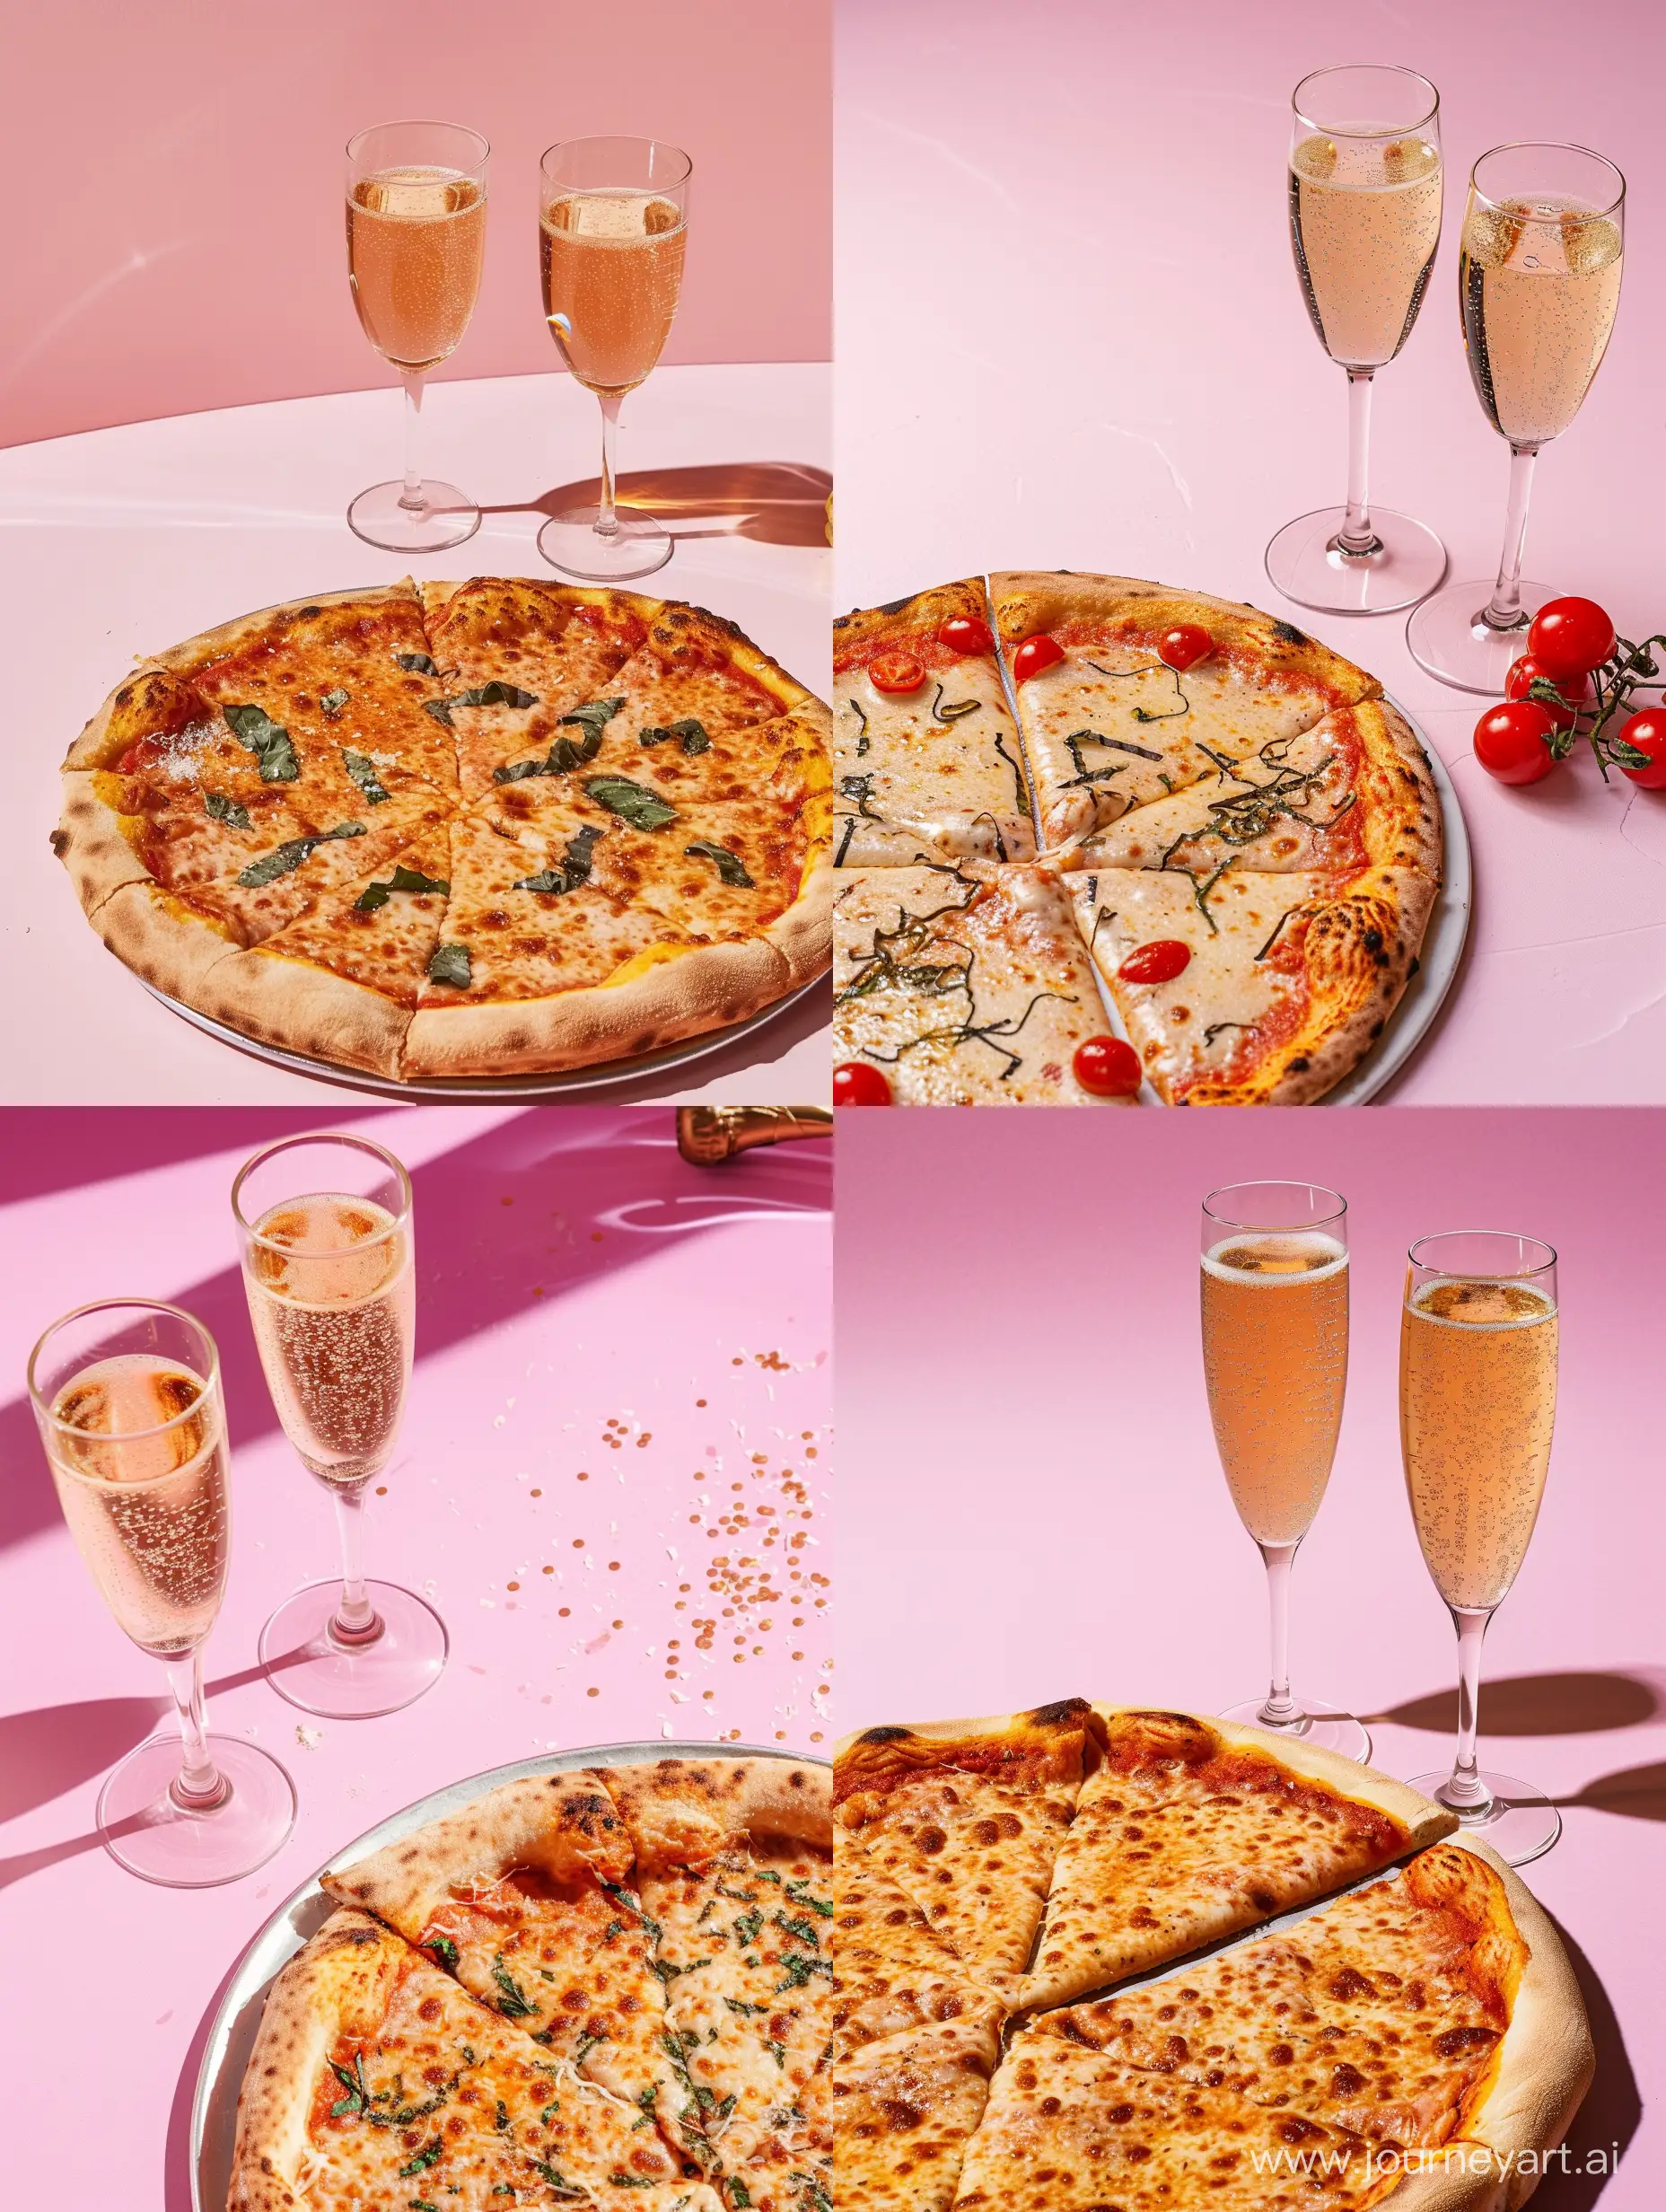 римская пицца и два бокала шампанского на розовом фоне 